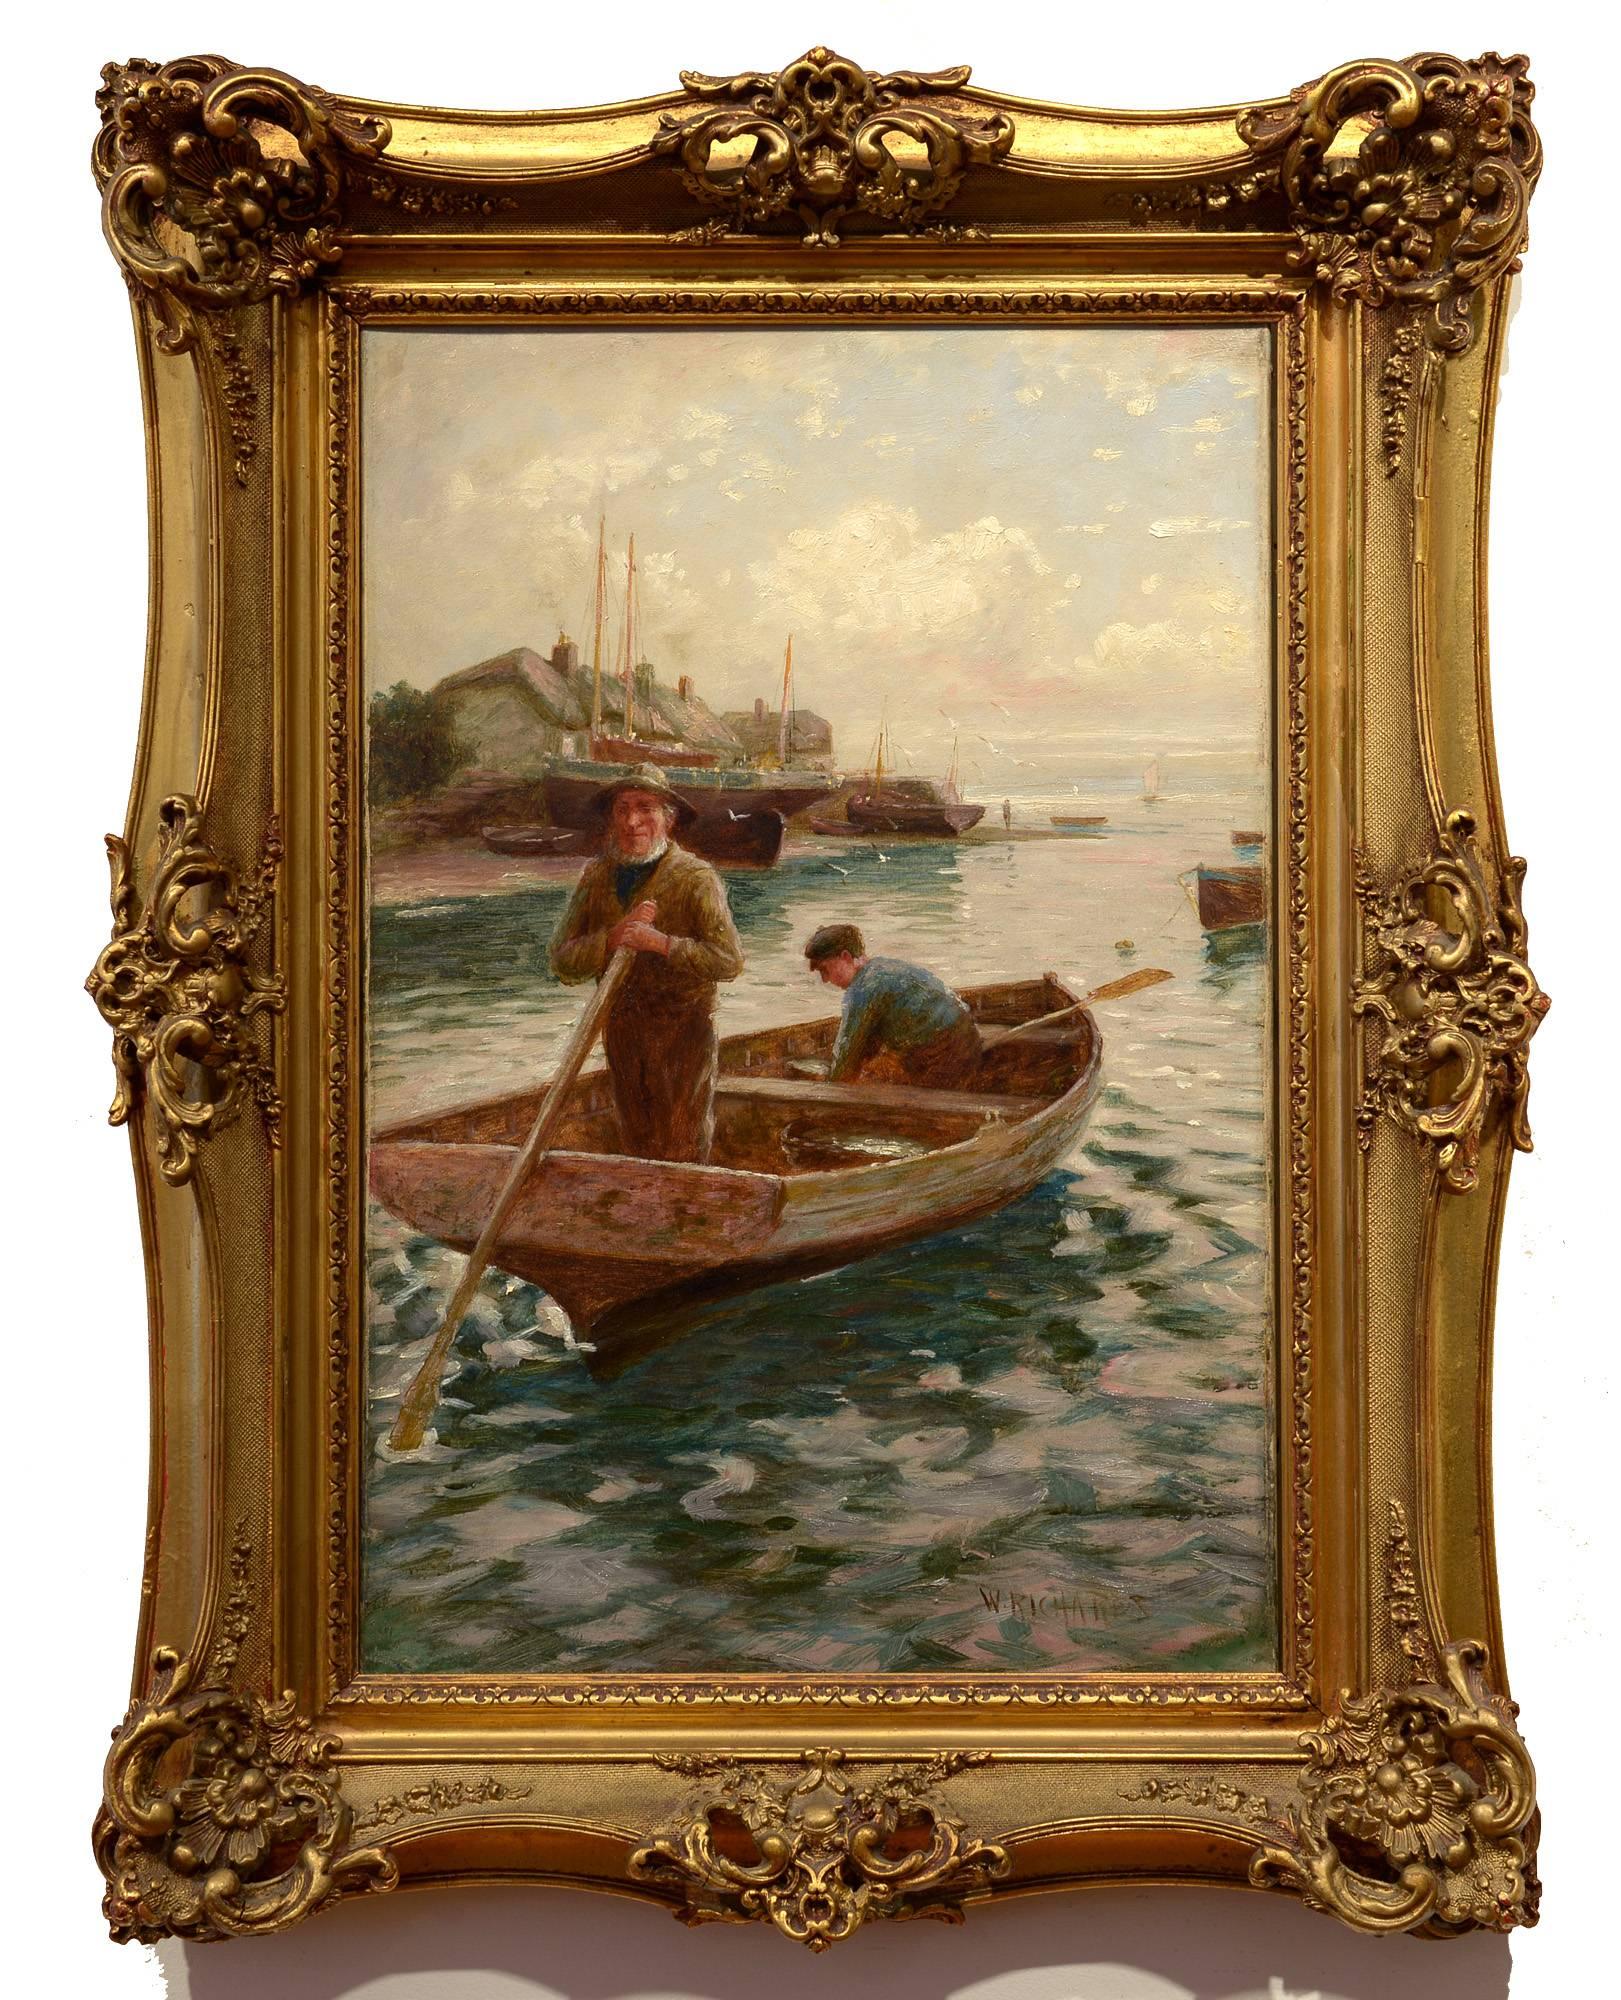 Der britische Künstler William Richards aus dem 19. Jahrhundert, der vor allem für seine maritimen und küstennahen Dorfszenen bekannt ist, stellte in mehreren Galerien und Museen aus, darunter im Pace London und im Brandywine River Museum.  